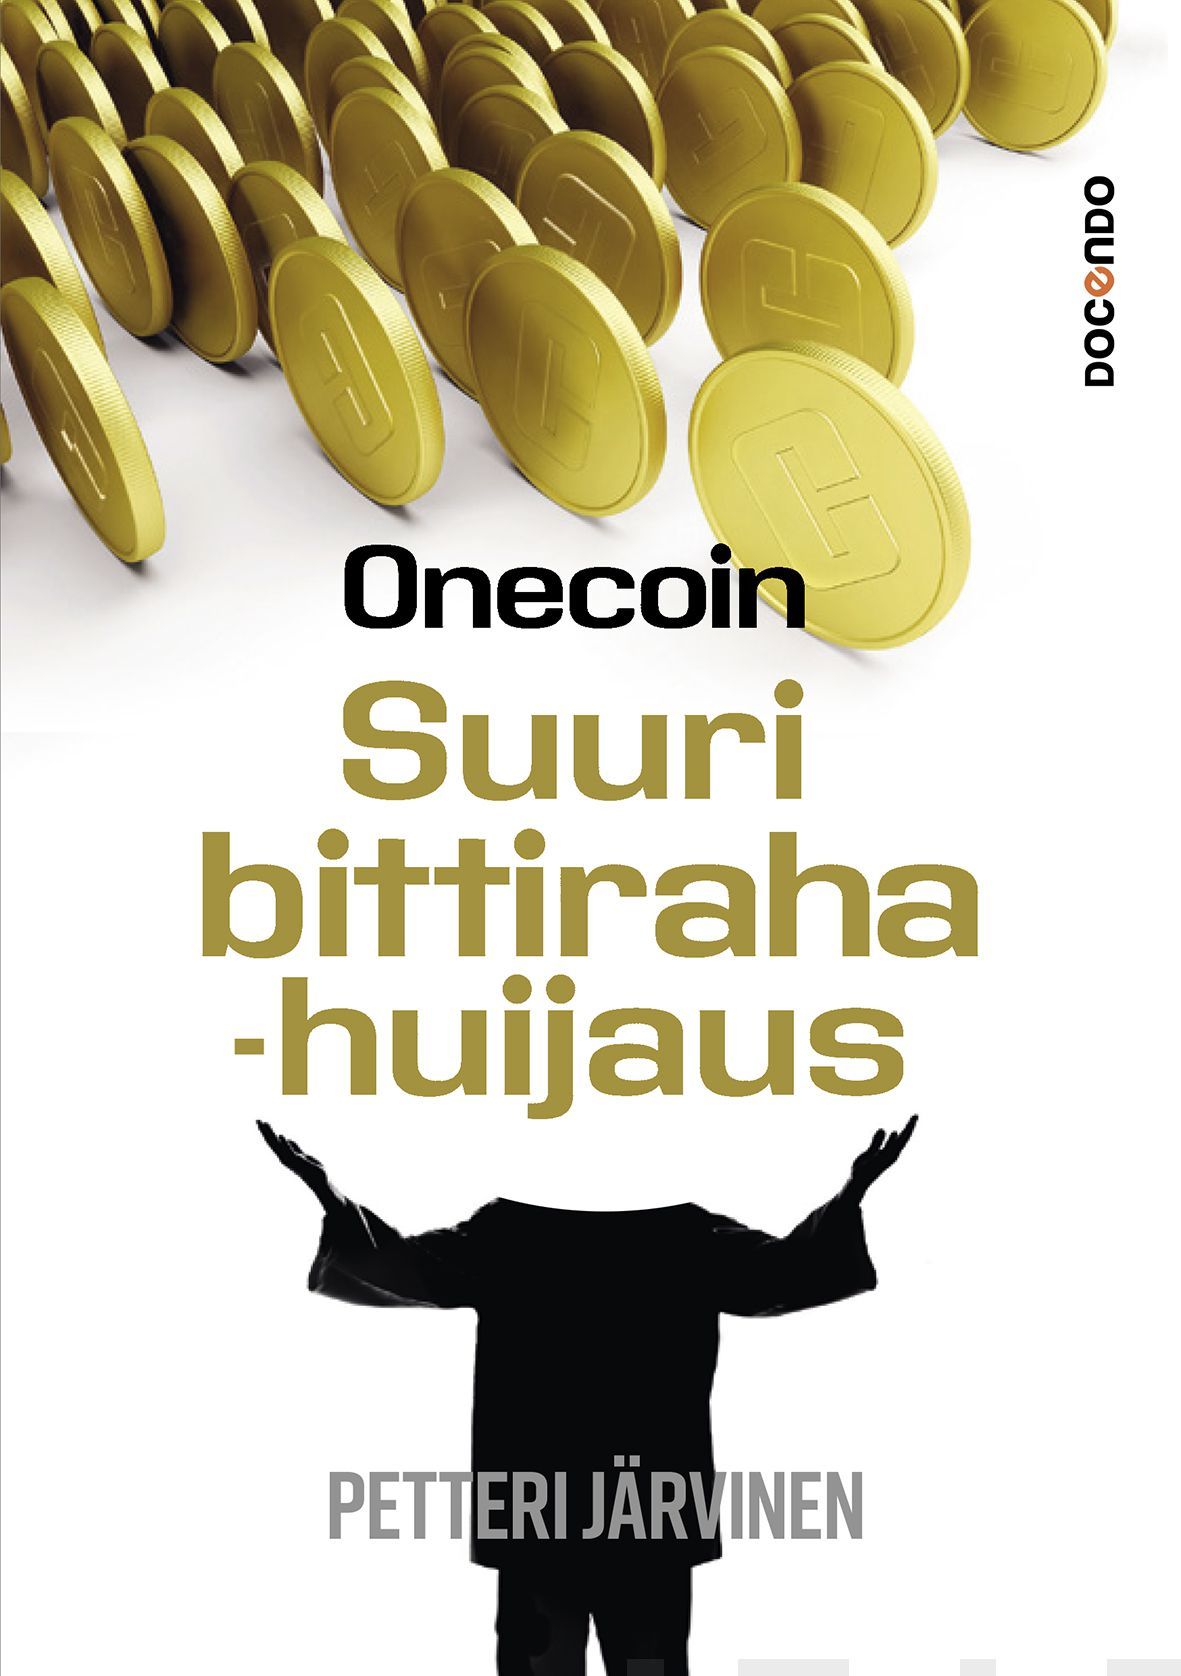 Onecoin | Docendon verkkokauppa